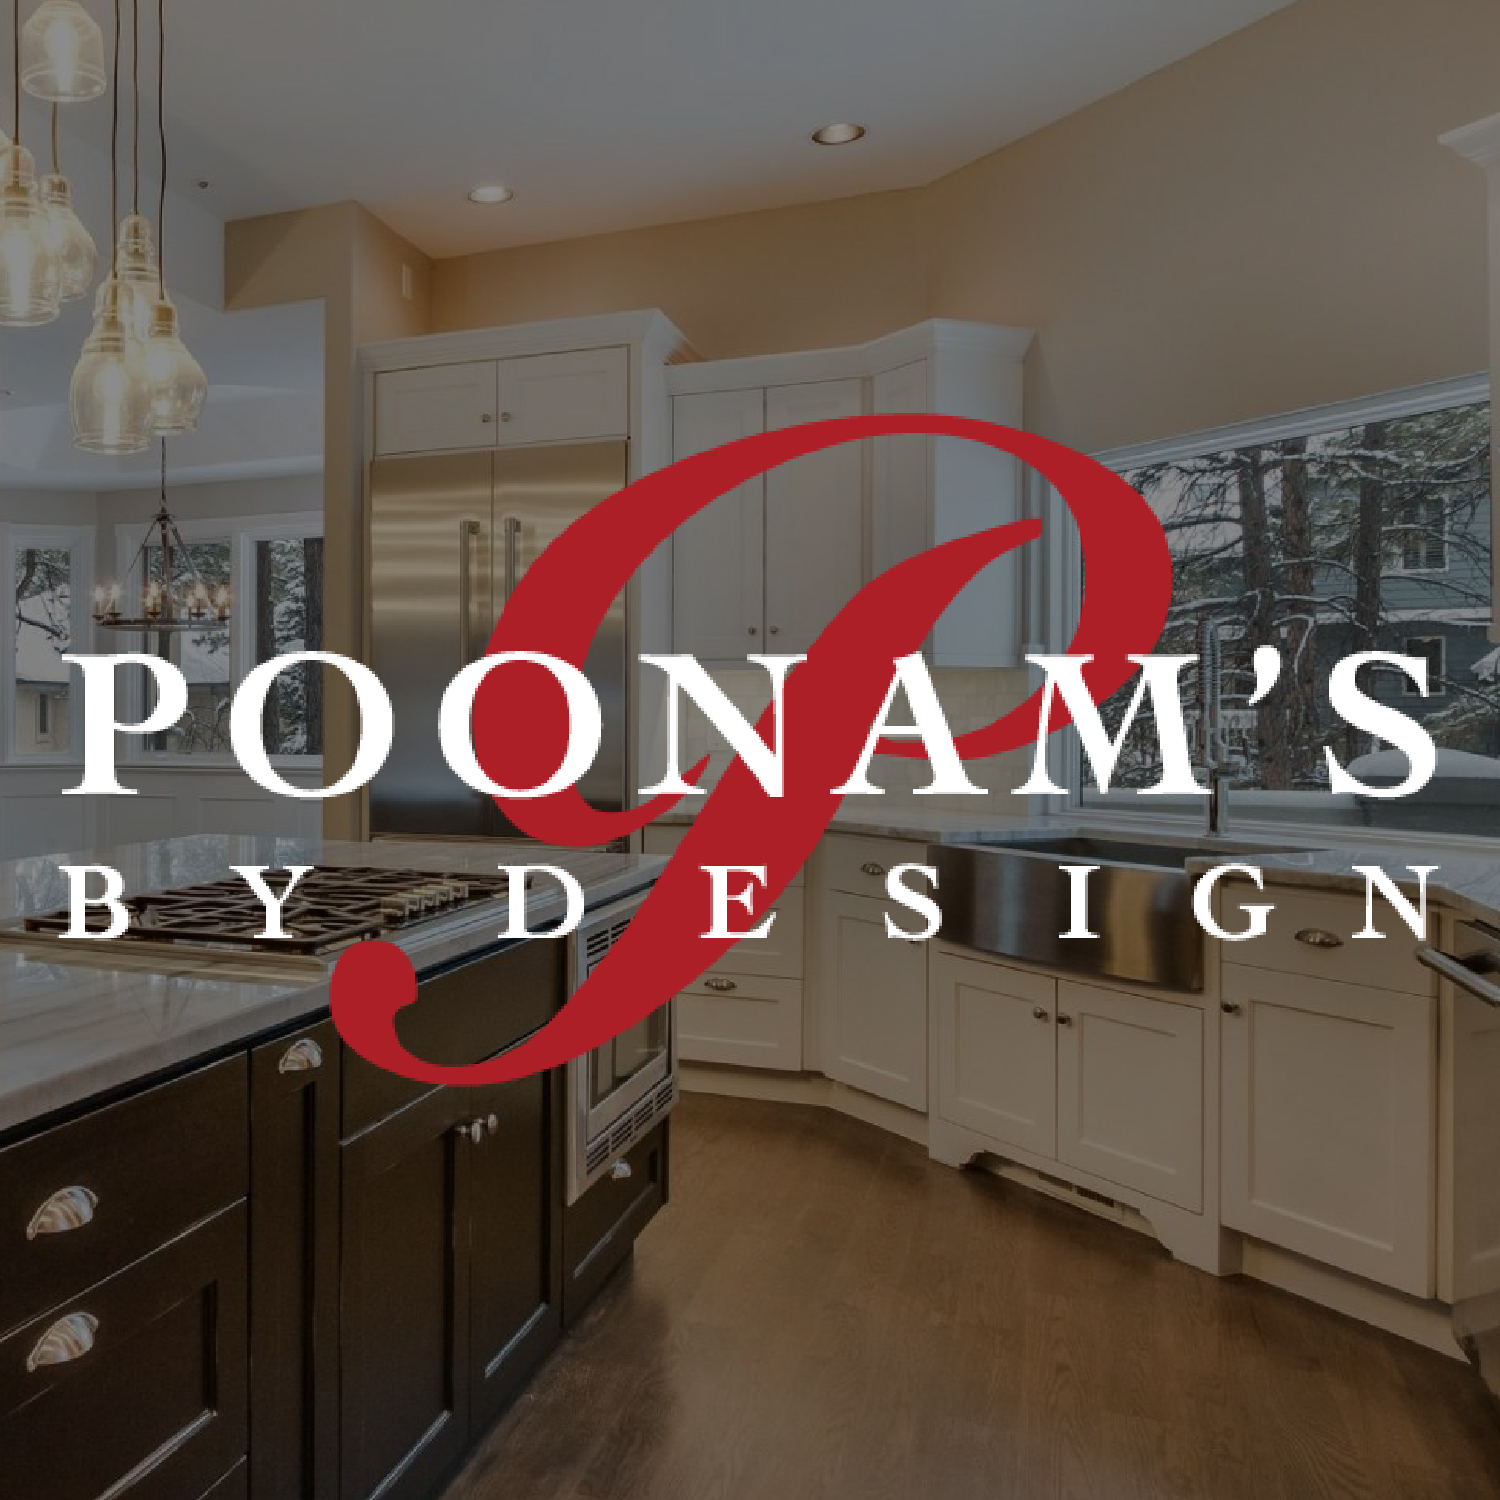 Poonam’s by Design